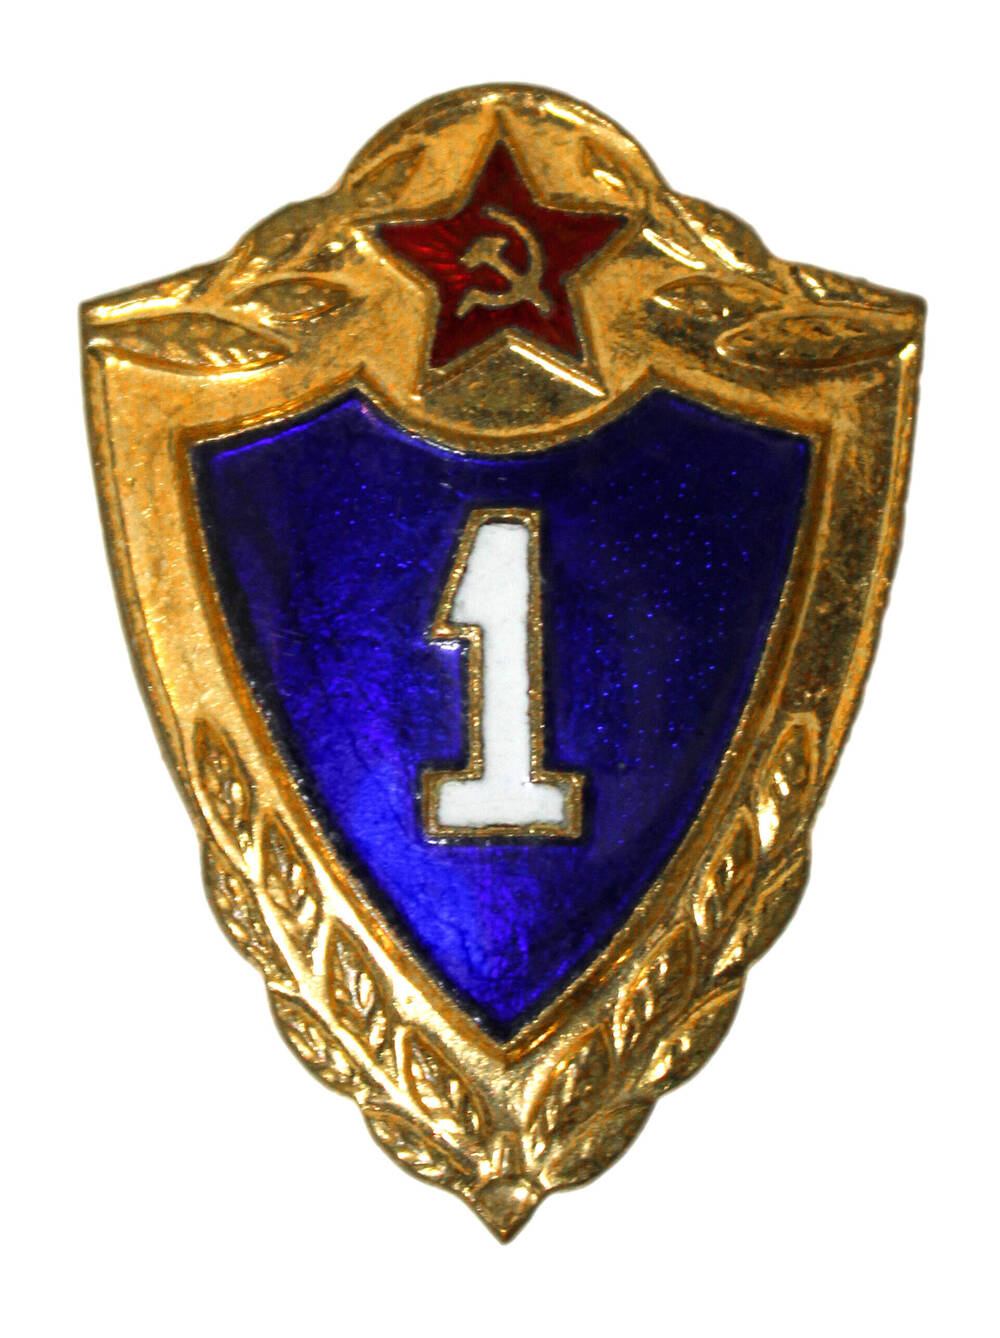 Знак нагрудный классного специалиста Вооруженных сил СССР (1 класс)